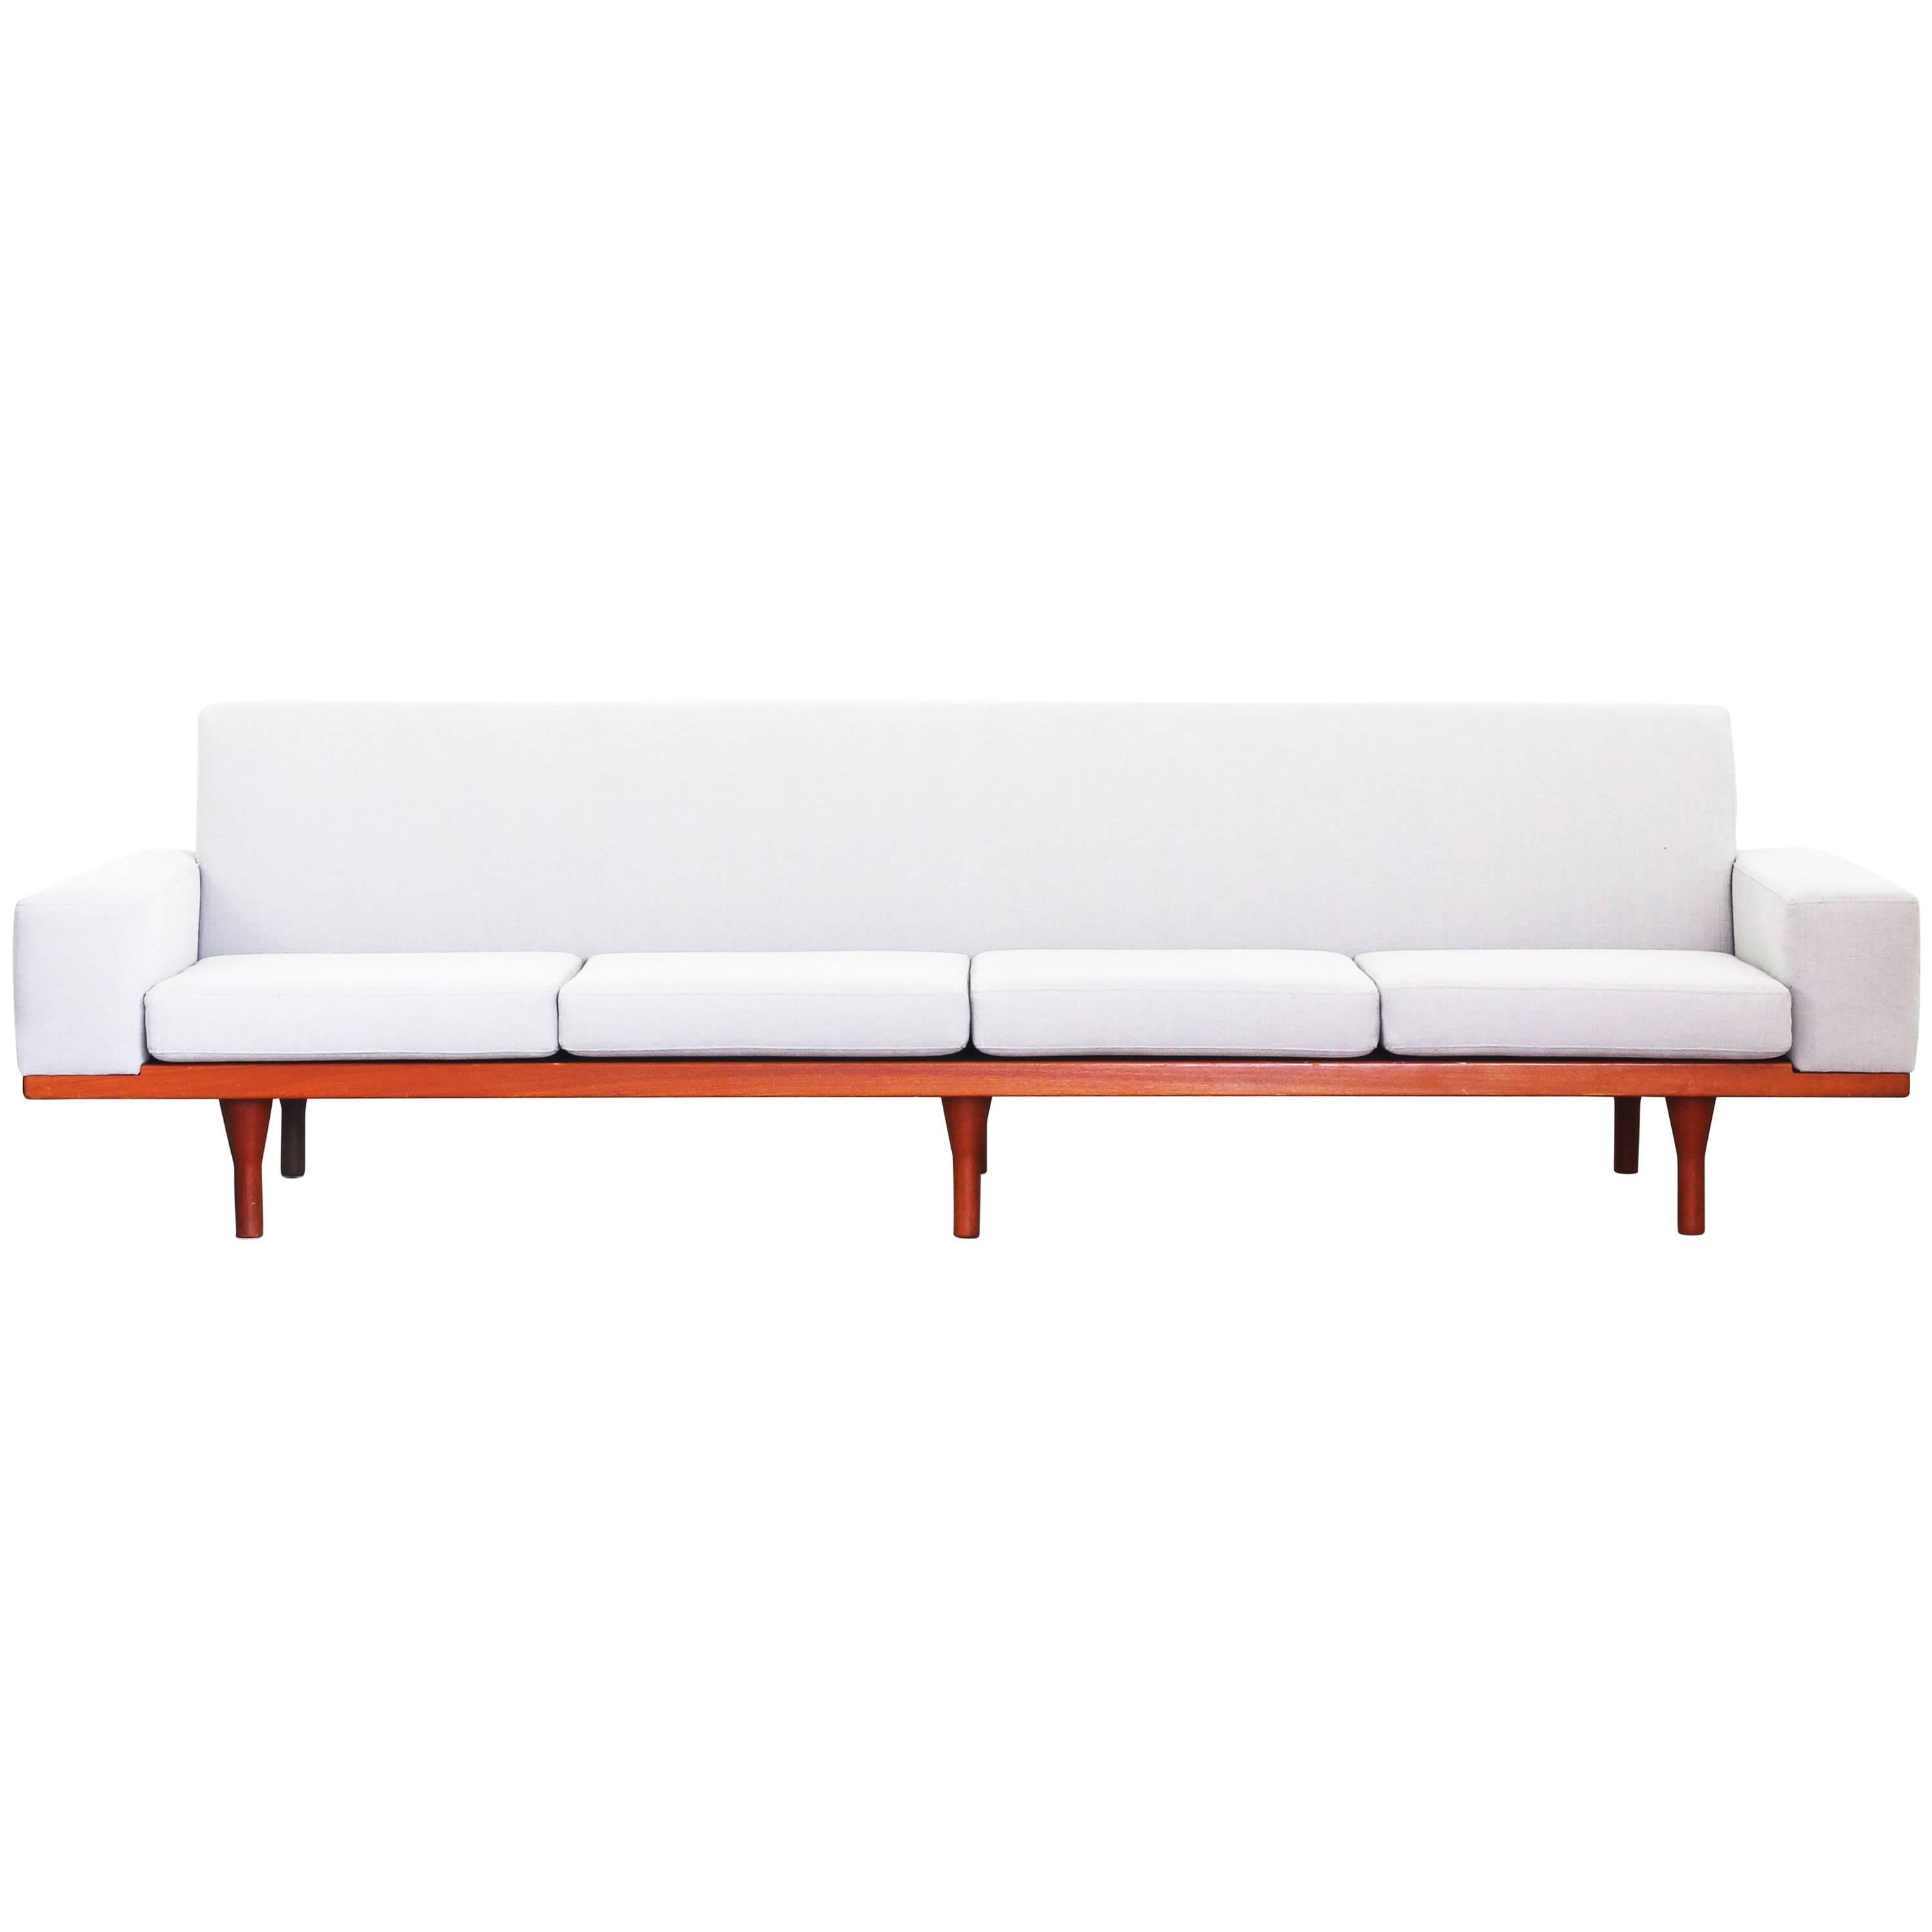 Rare Sofa by Illum Wikkelsoe Wikkelso for Søren Willadsen Teak New Upholstery